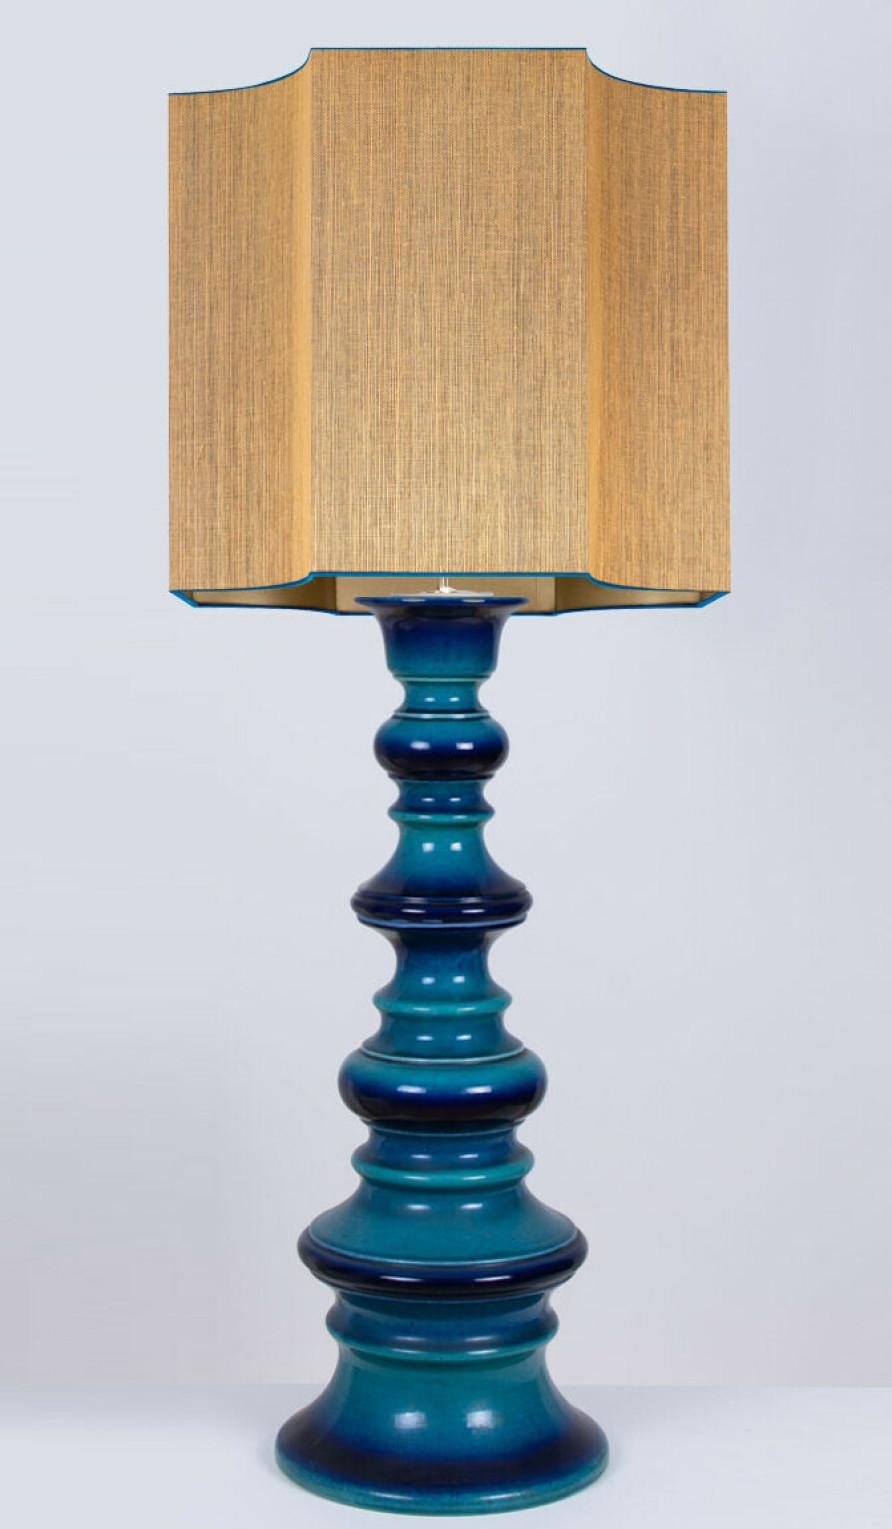 Außergewöhnliche Keramikblasenlampe, Deutschland, 1960er Jahre. Ein skulpturales, hochwertiges Stück aus handgefertigter Keramik in satten, glasierten Blautönen. Mit einem neuen, maßgefertigten, passenden Lampenschirm von René Houben.

Die Lampe ist